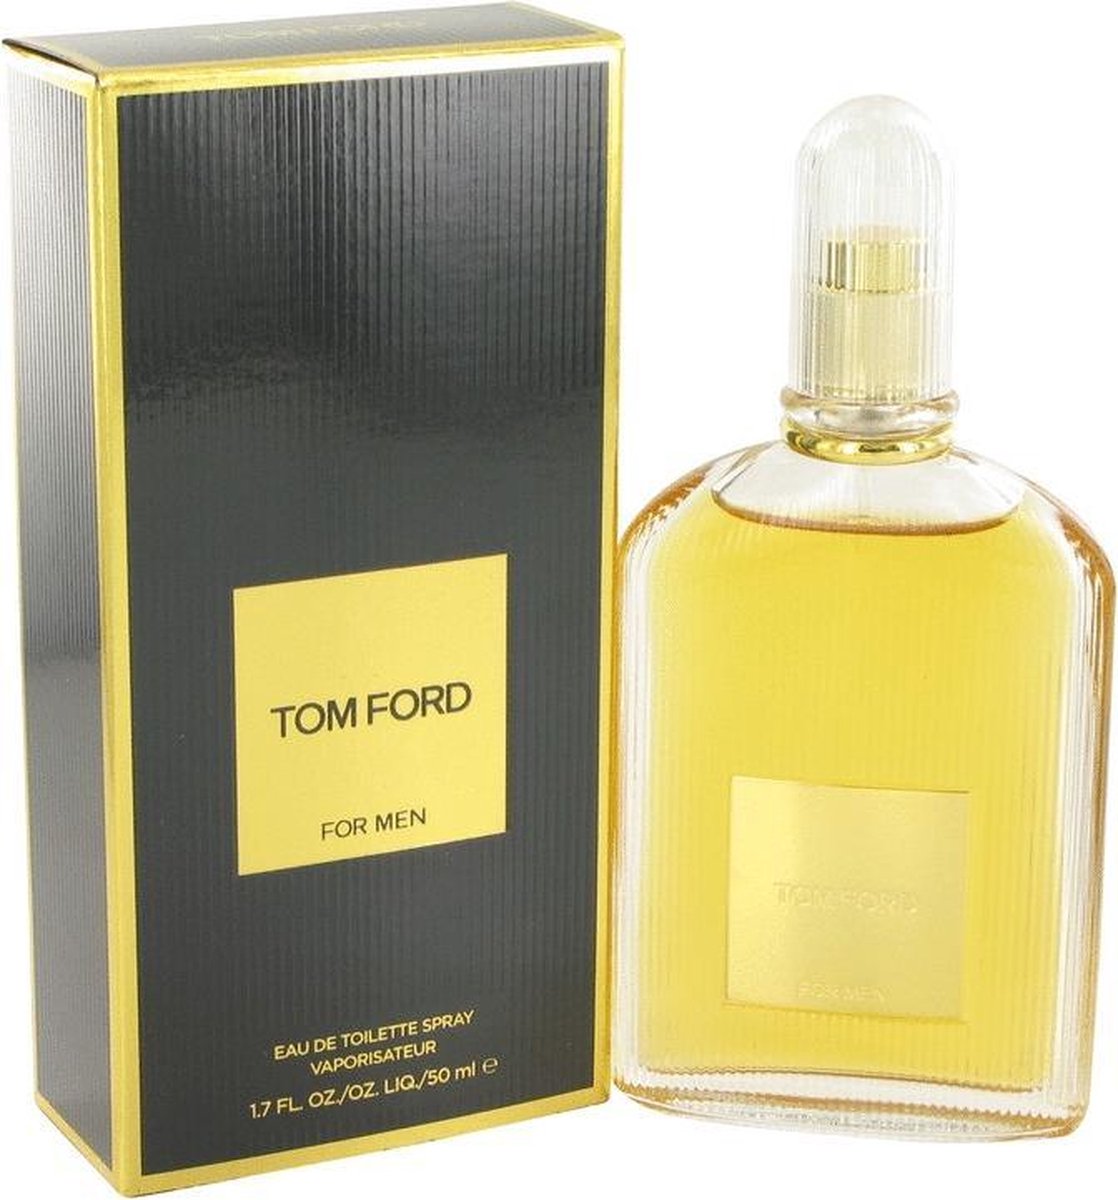 Tom Ford Eau De Toilette Spray 50 ml For Men